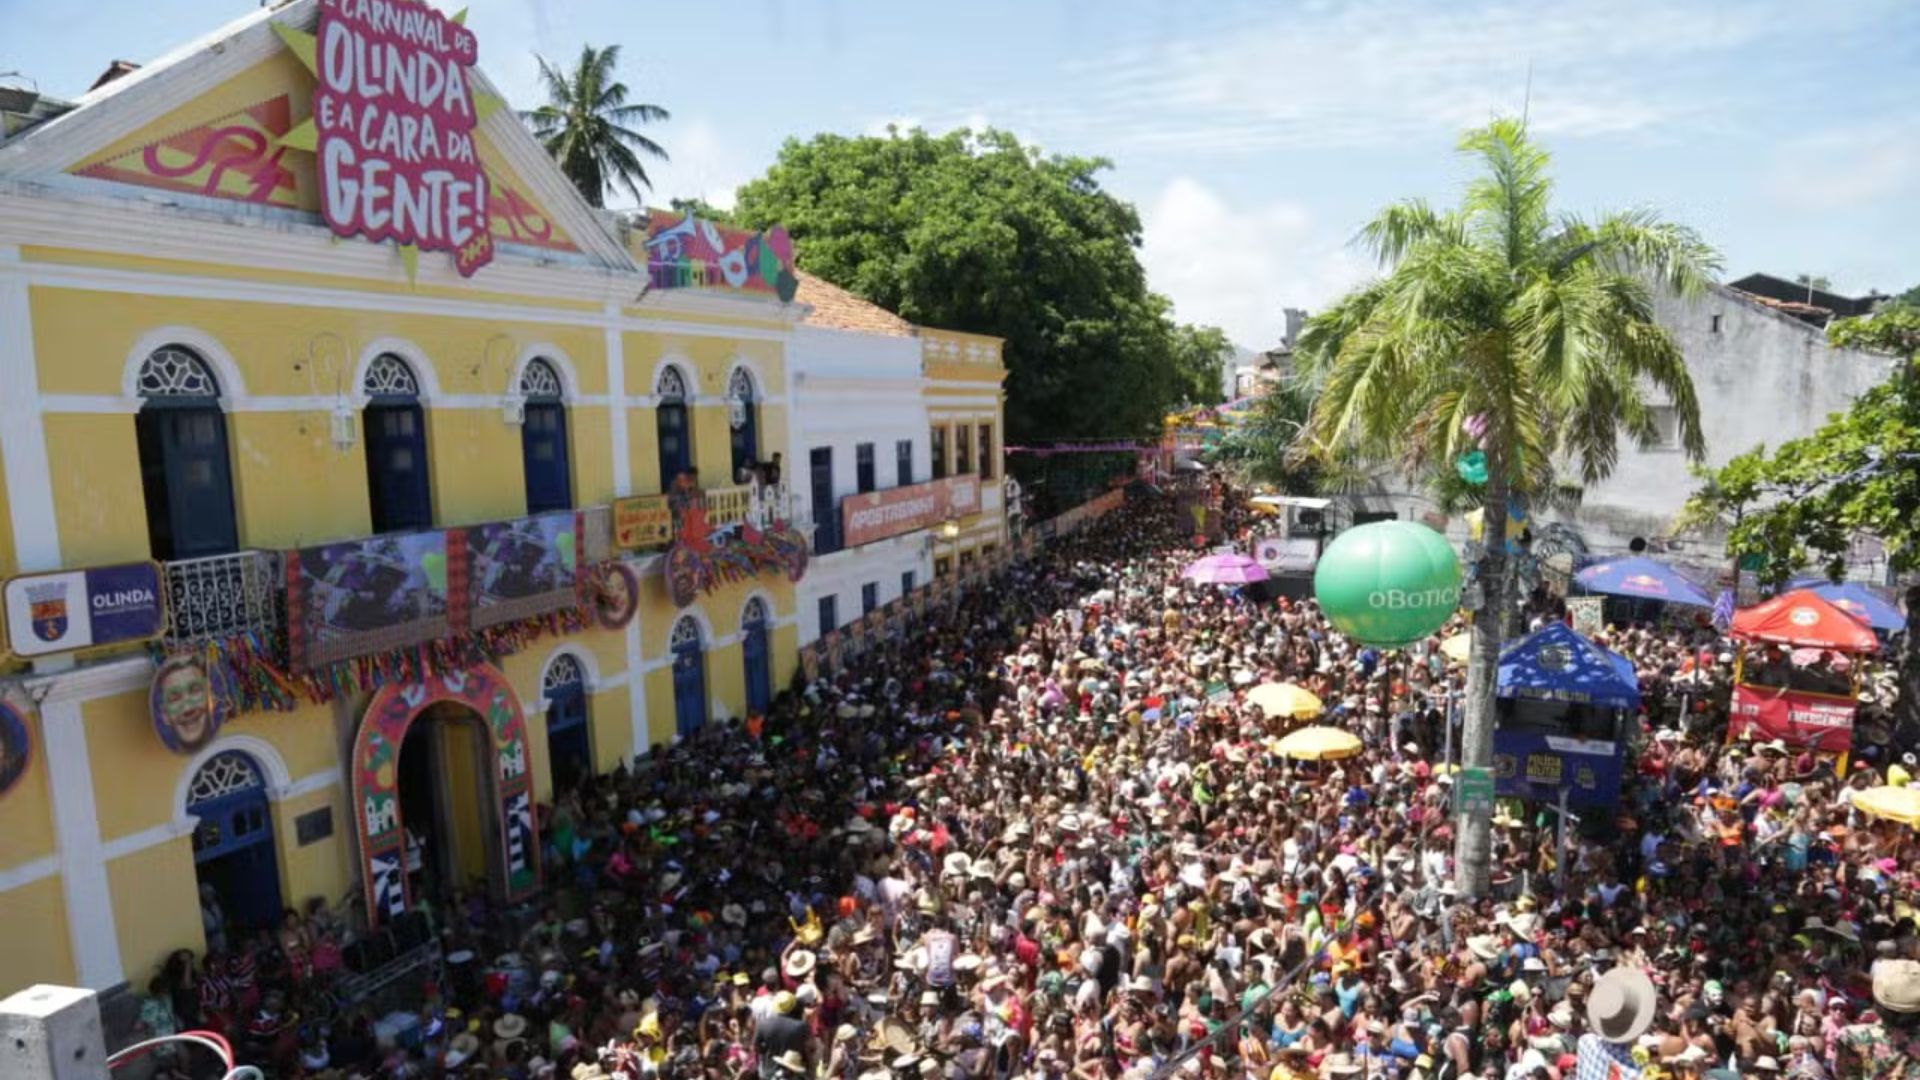 Carnaval de Olinda. Foto: Reprodução/Prefeitura de Olinda.